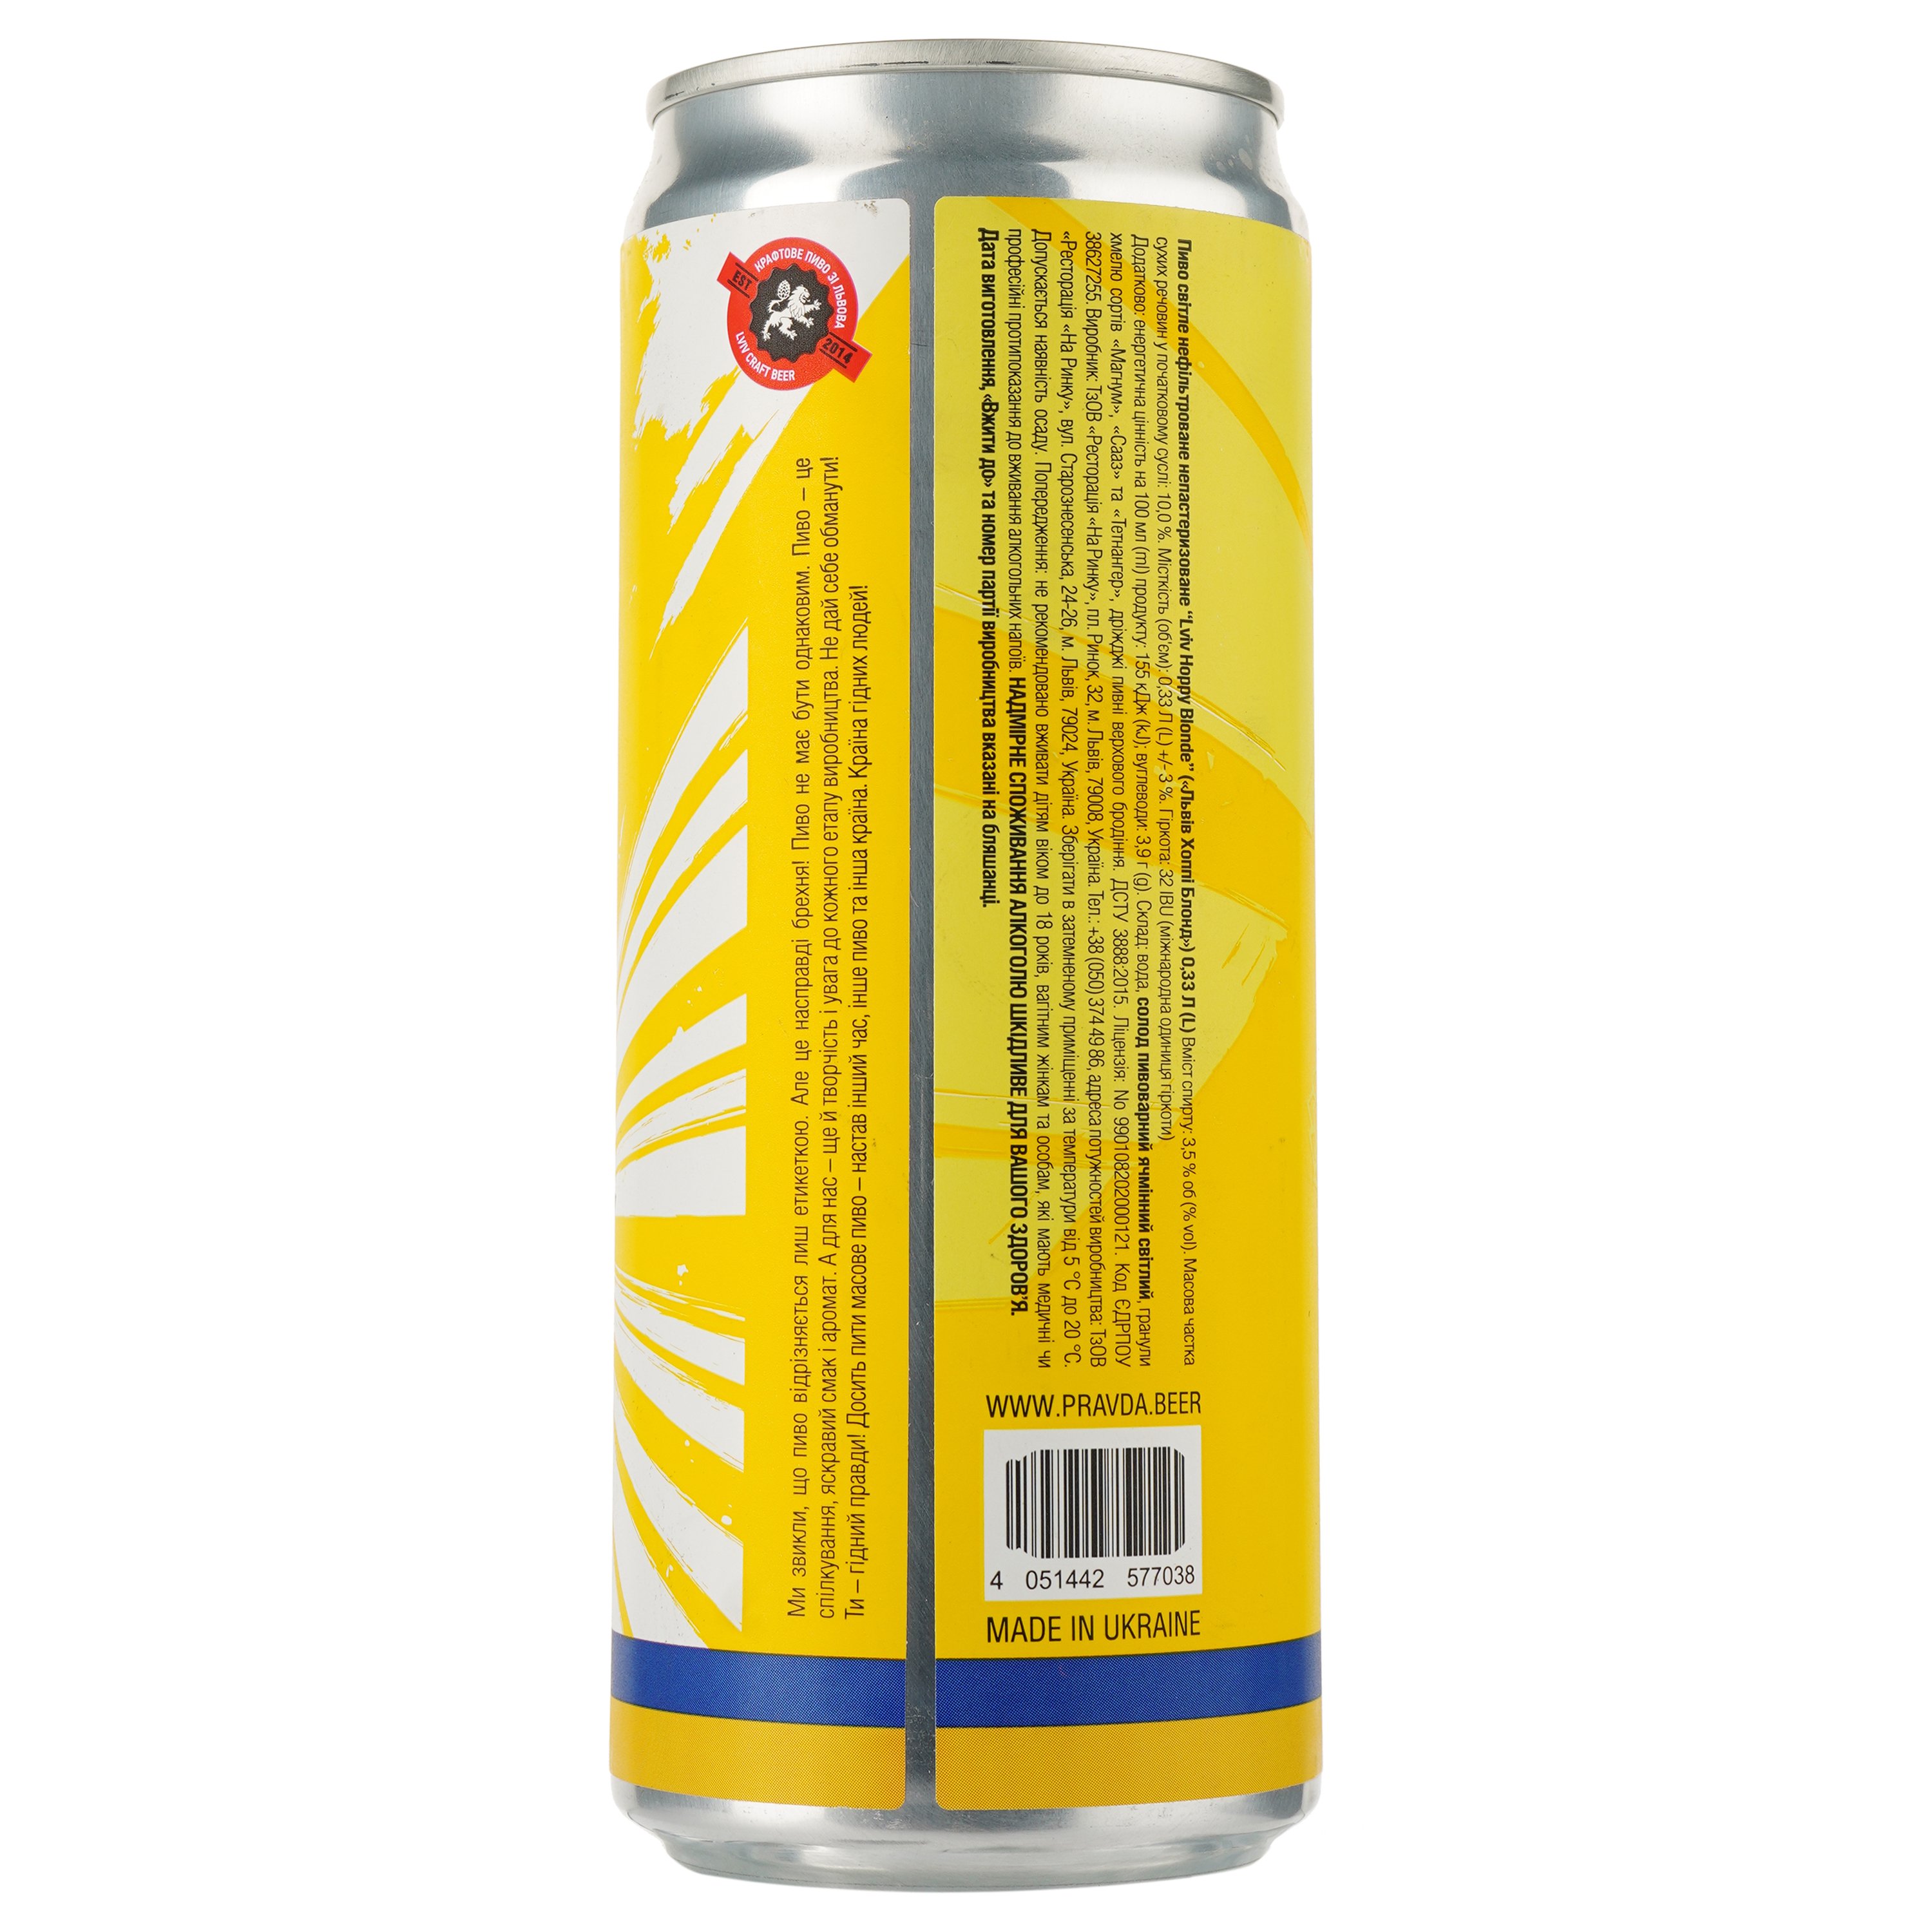 Пиво Правда Lviv Hoppy Blonde, светлое, нефильтрованное, 3,5%, ж/б, 0,33 л (912533) - фото 2